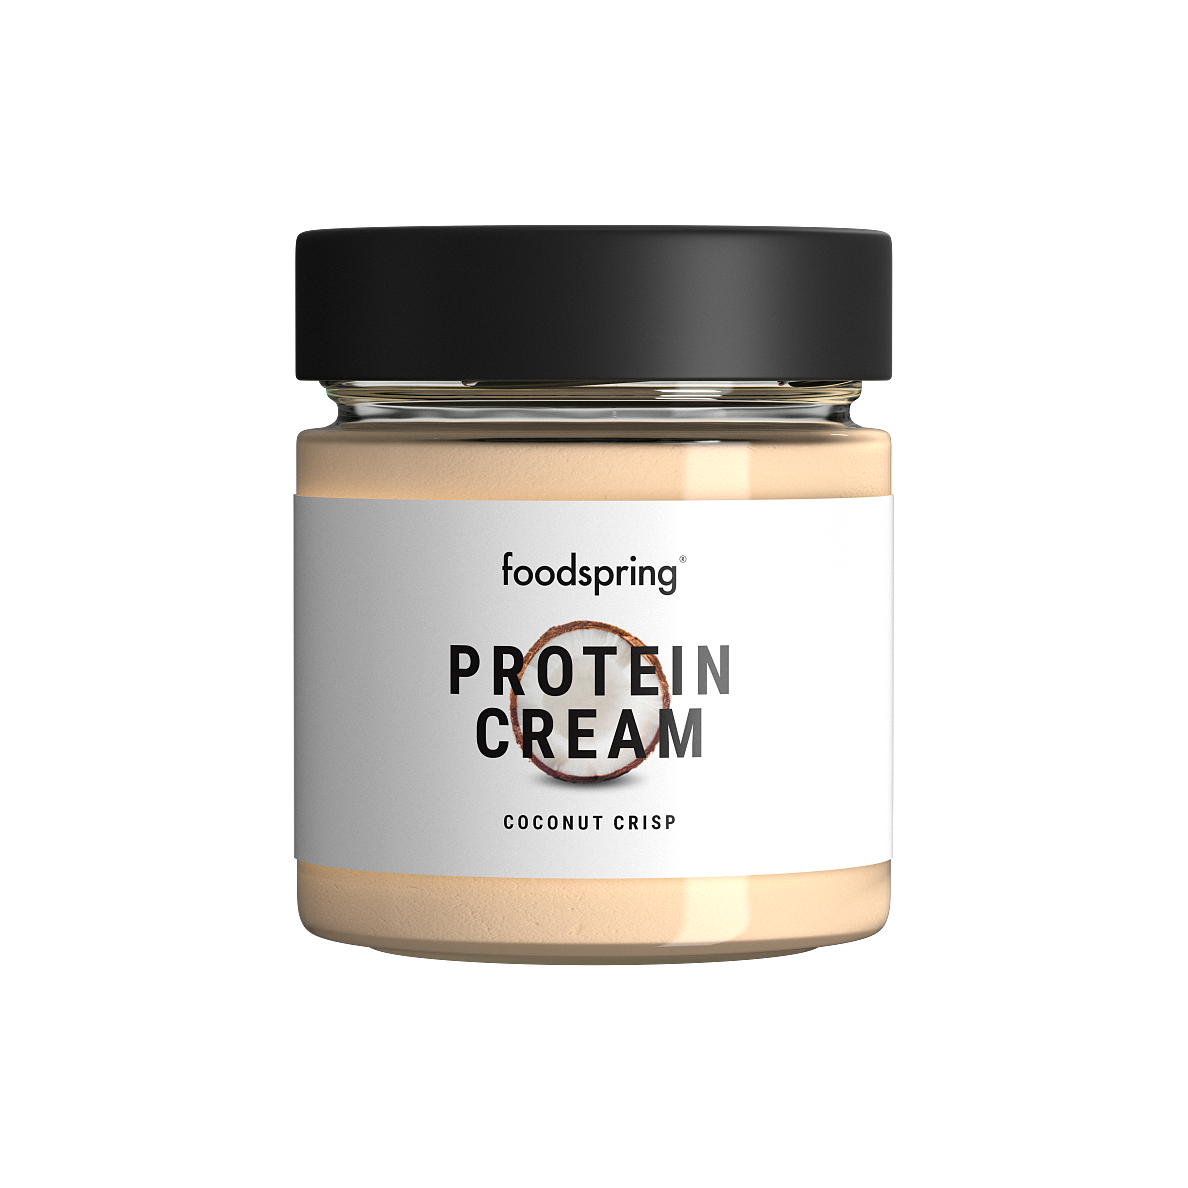 foodspring_Protein Cream_Coconut Crisp_EUR 5,99